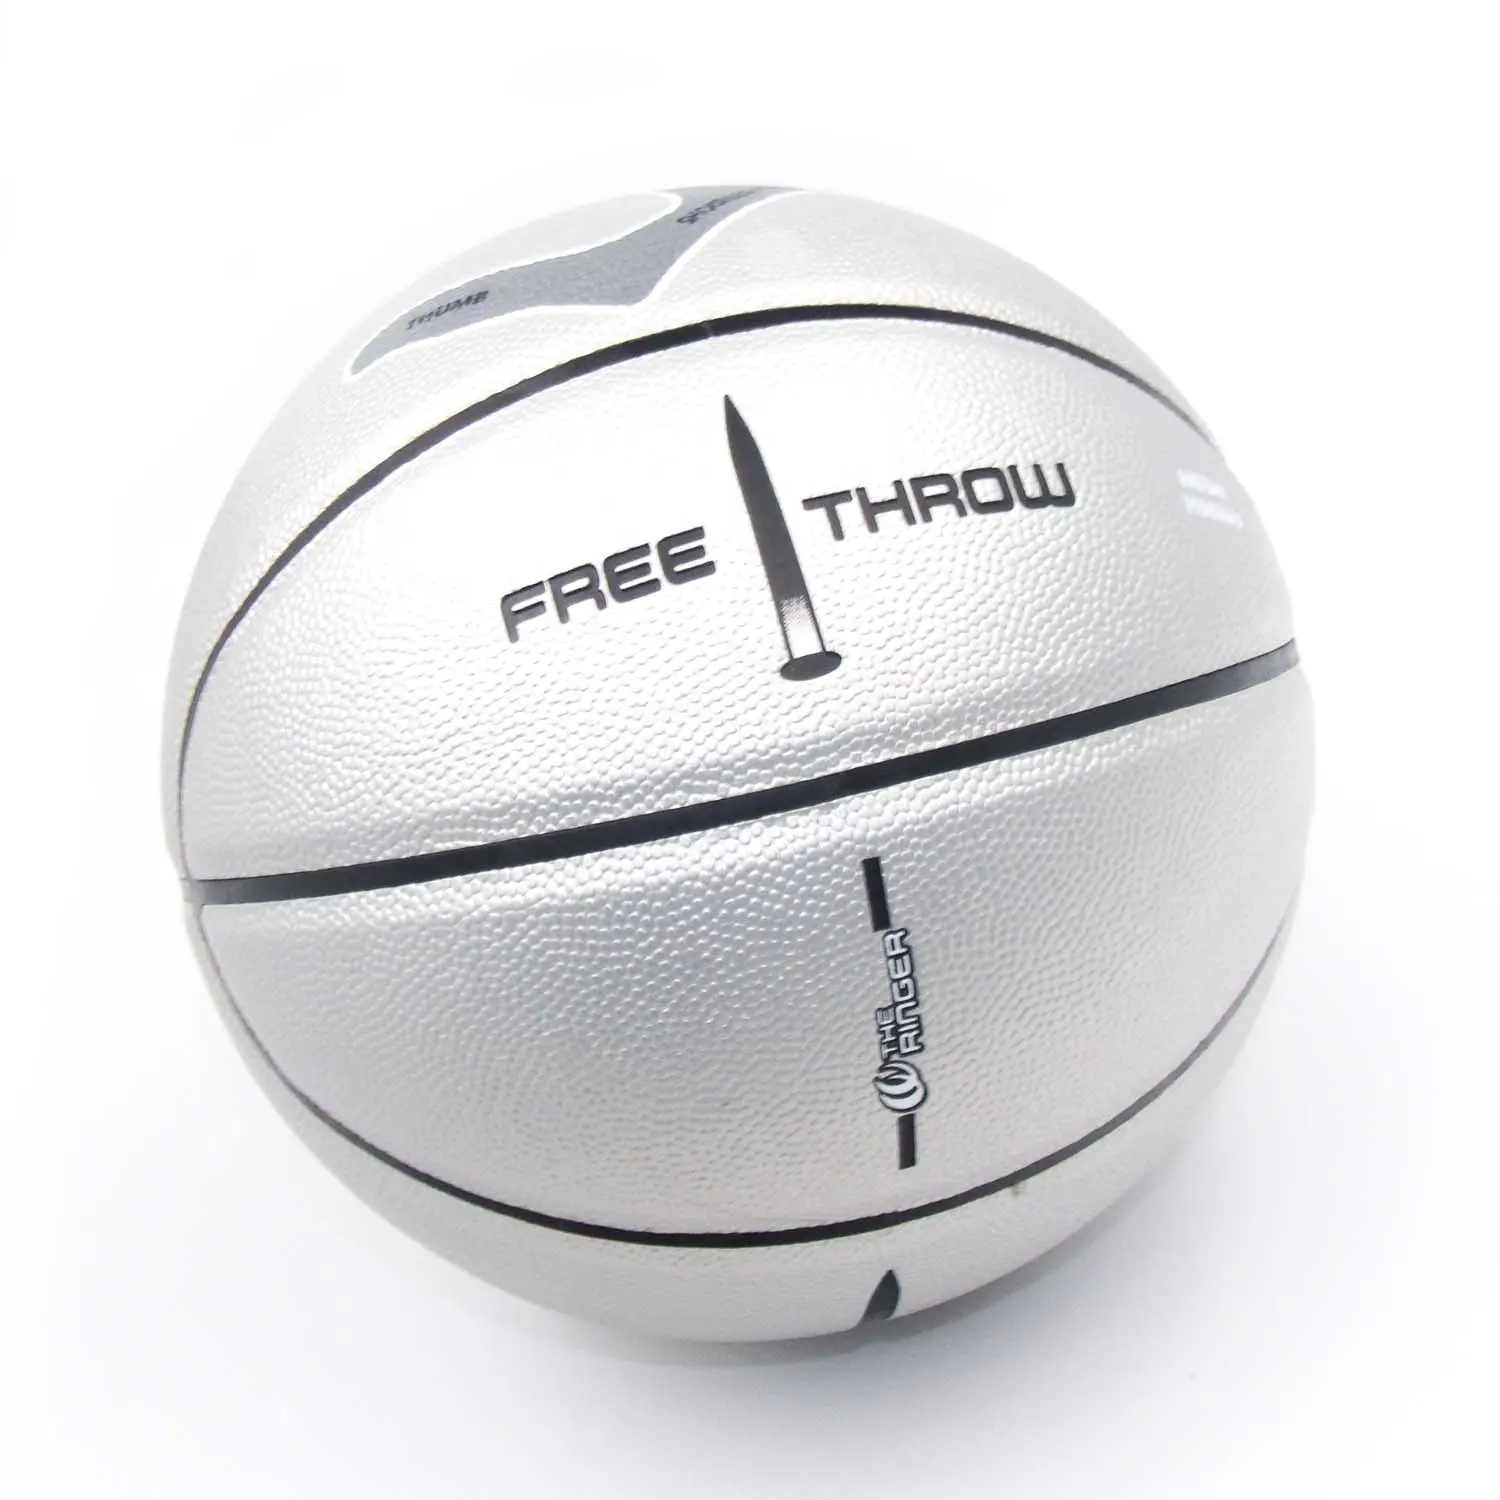 Горячая Распродажа, индивидуальная продажа баскетбола с вашим собственным брендом